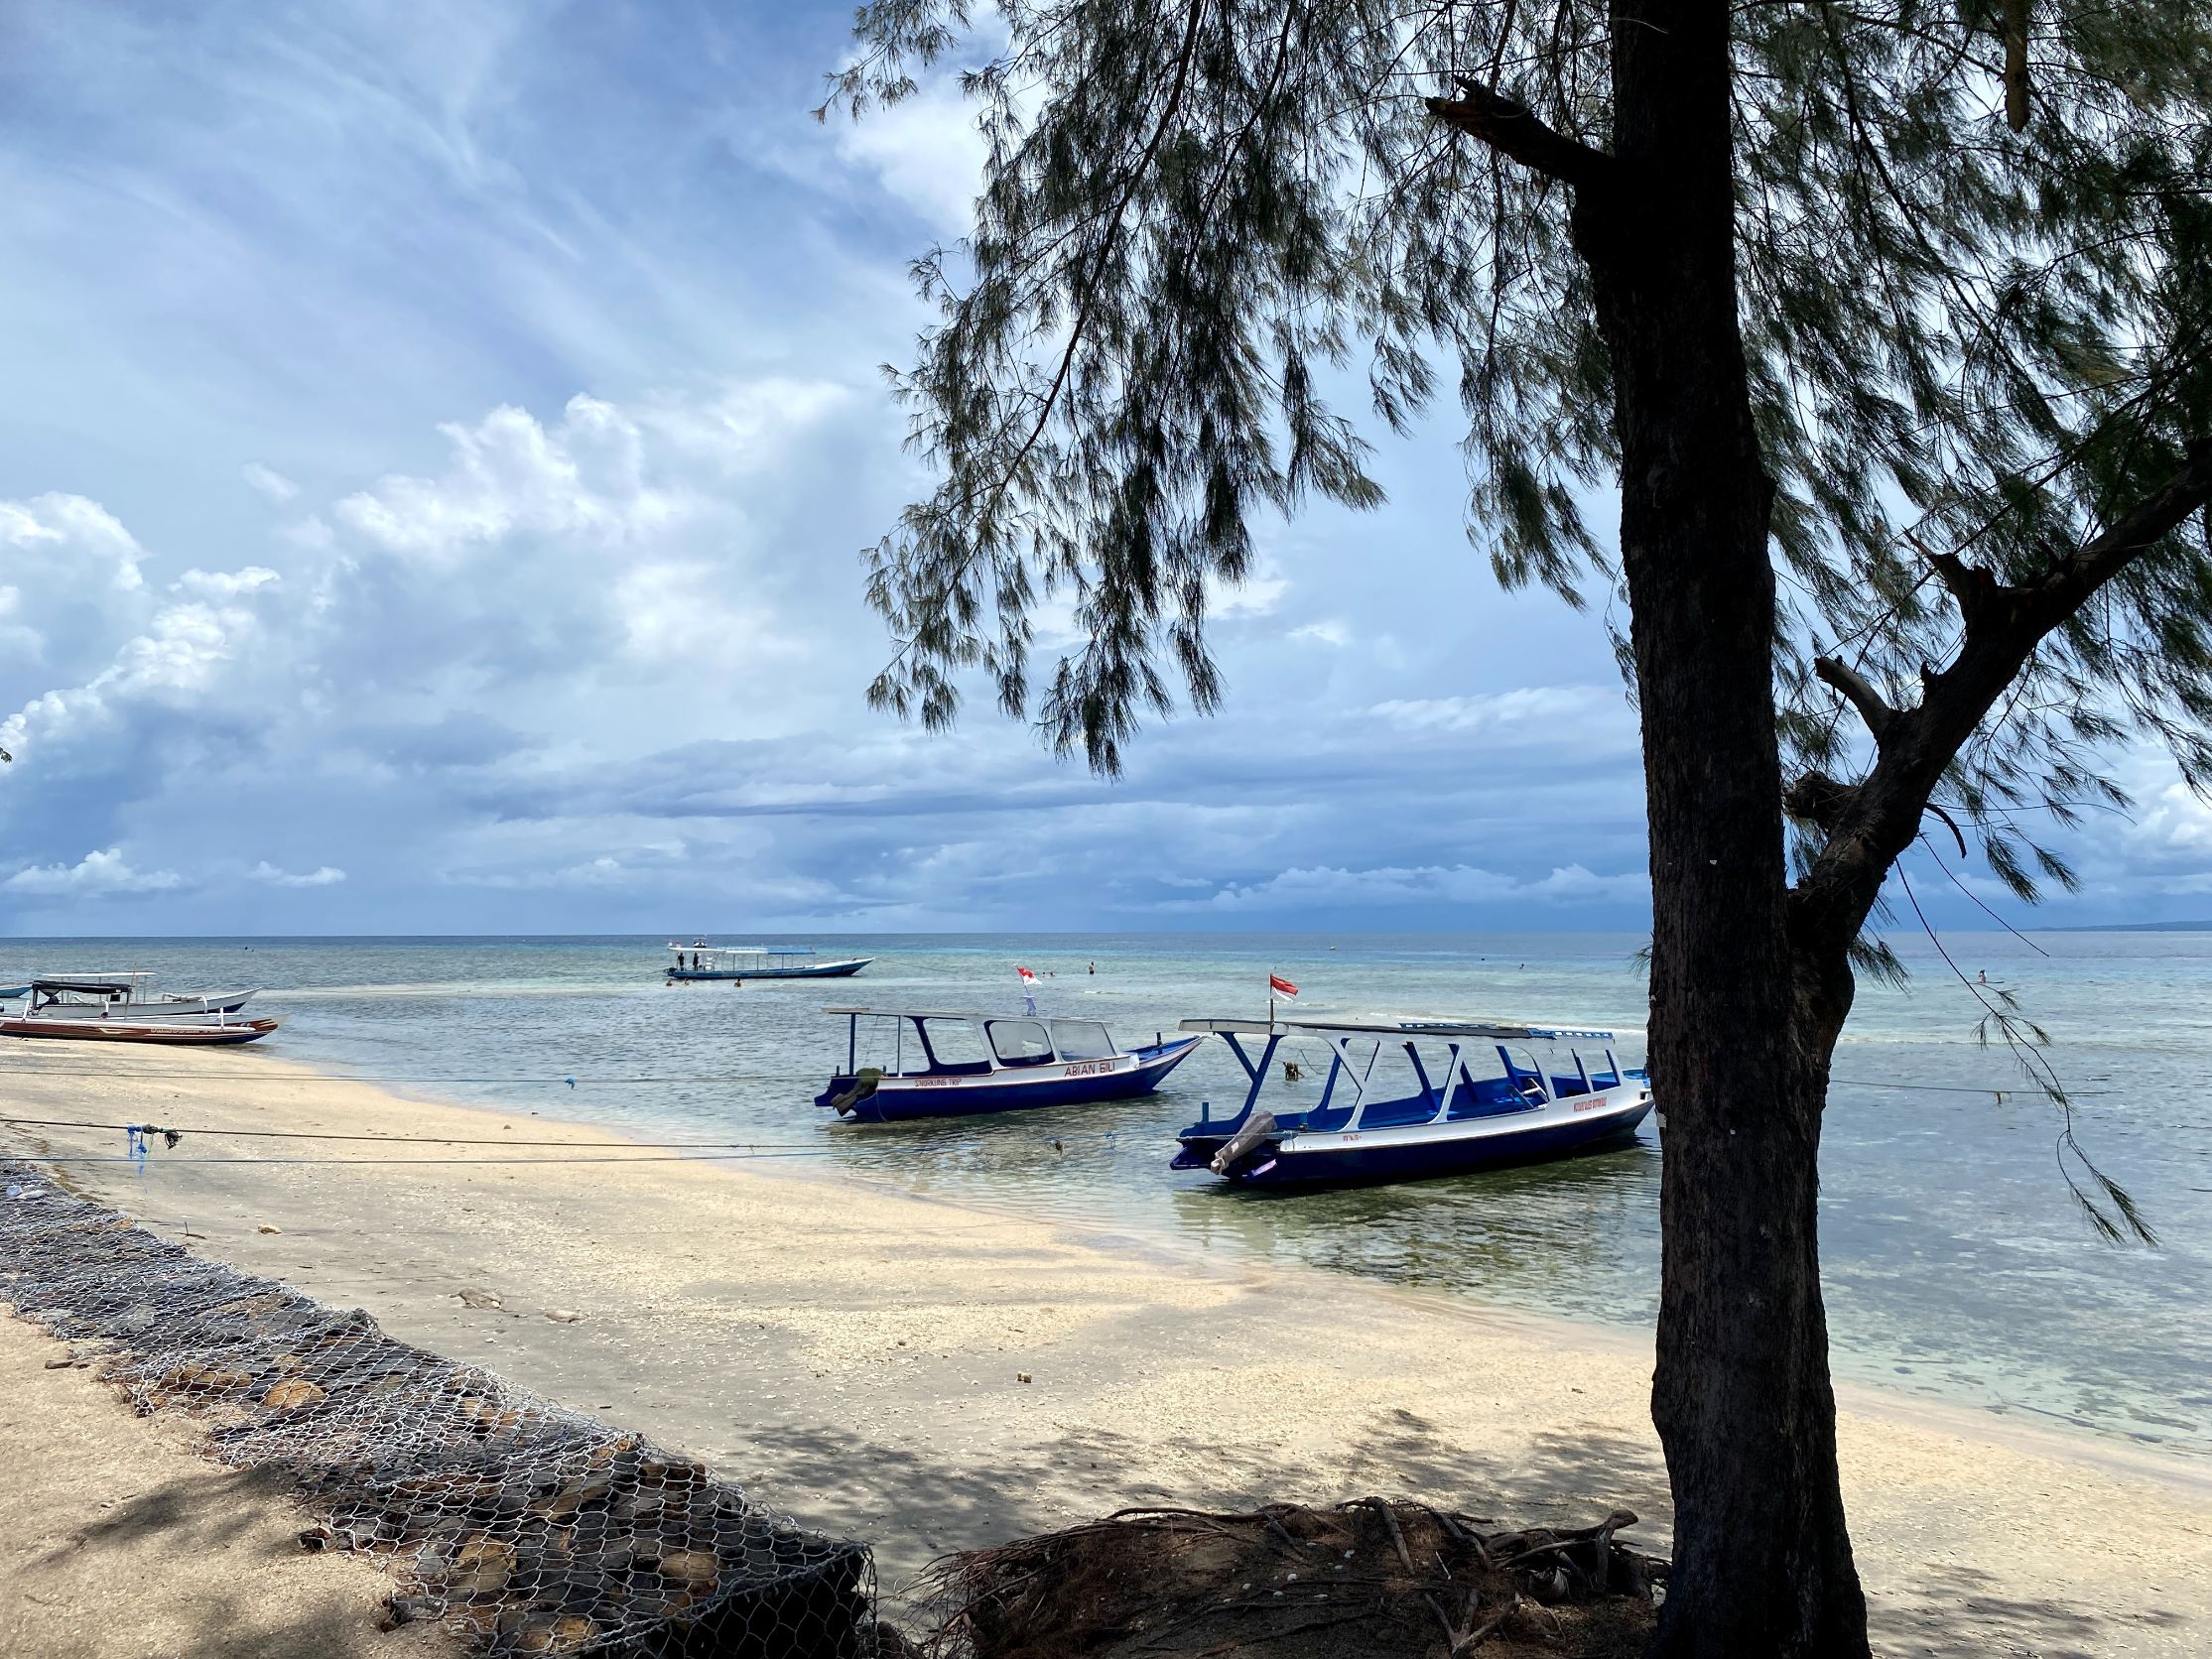 Je bekijkt nu Gili-eilanden, Indonesië (3) – Duiken en bounty stranden op Gili Air